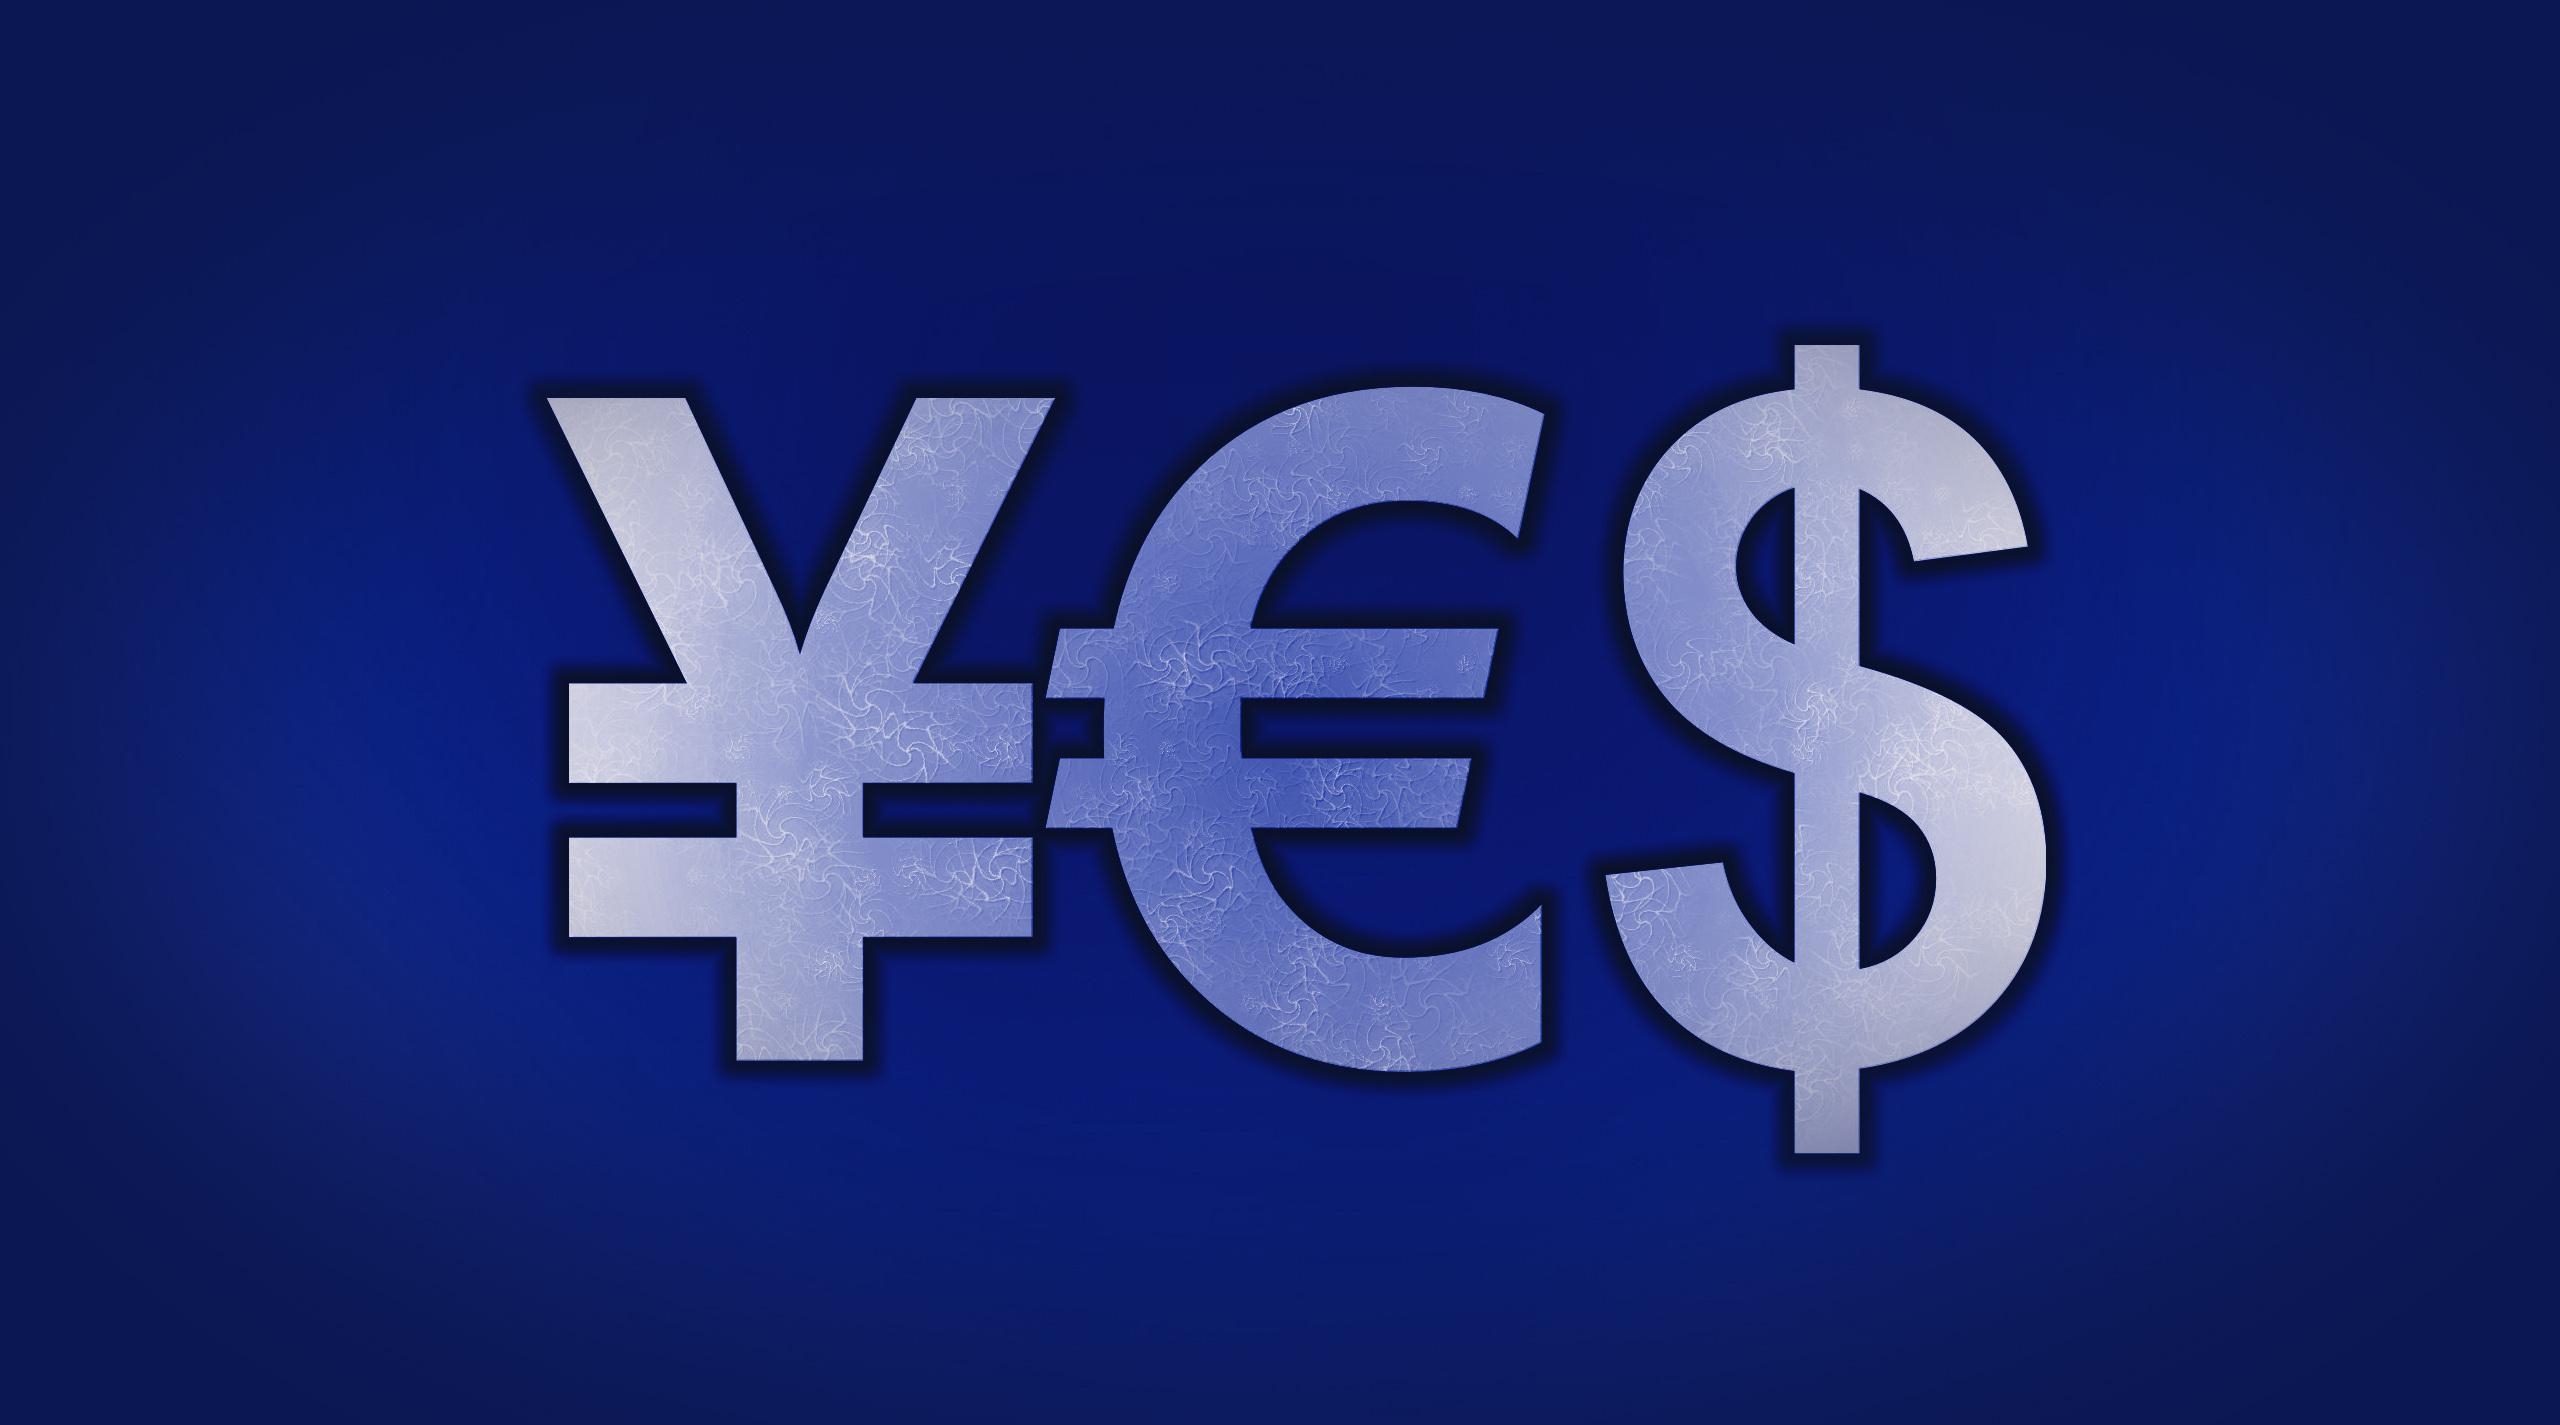 Евро, йена и доллар возглавляют список мировых валют